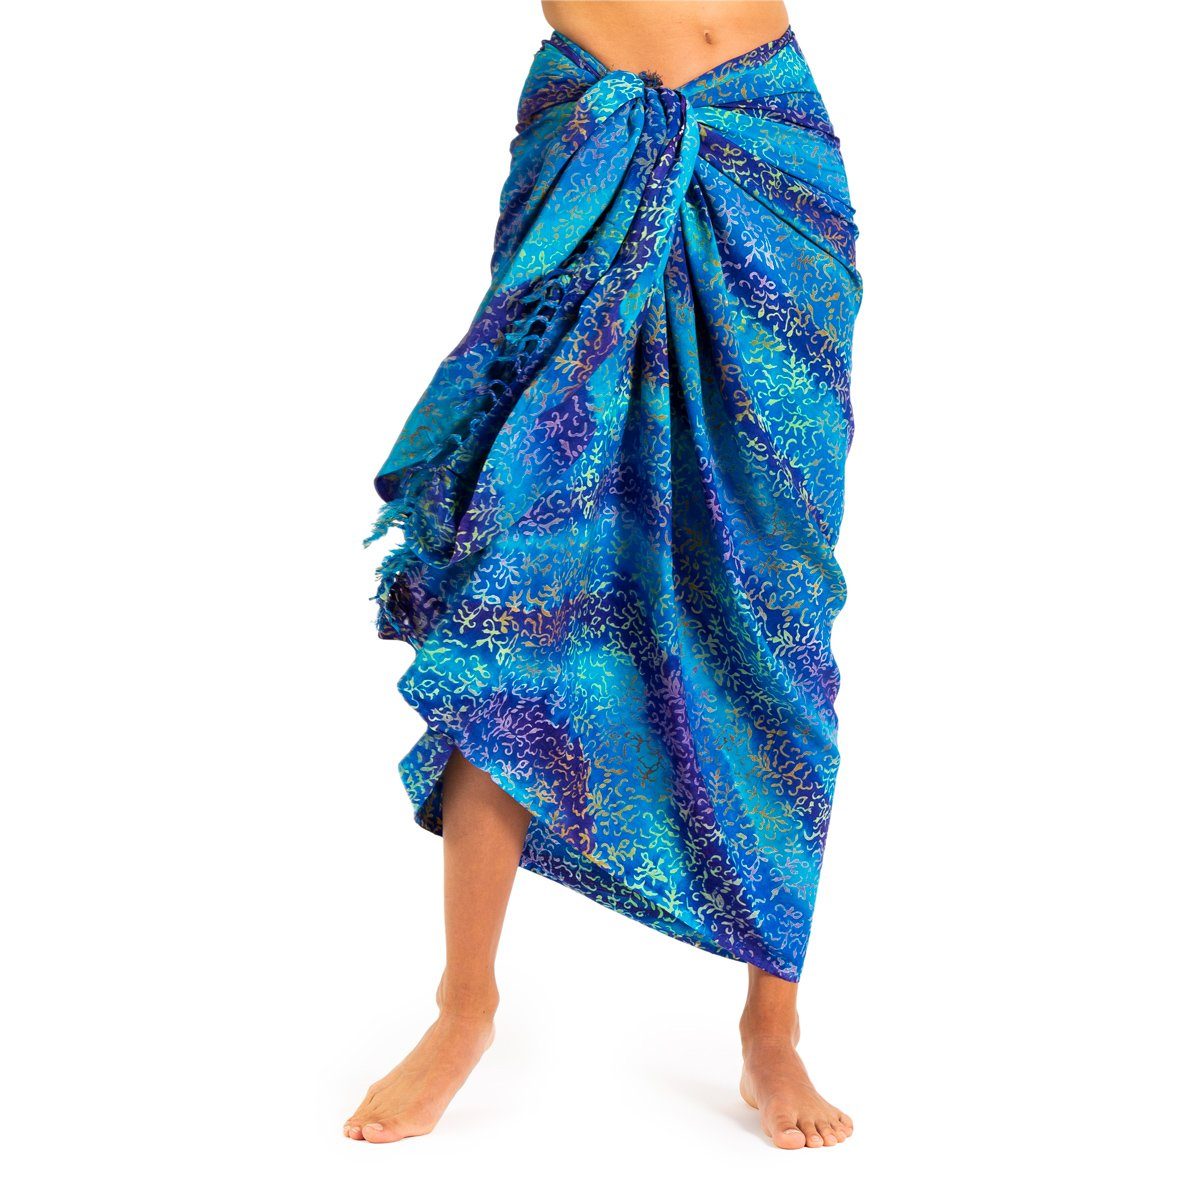 PANASIAM Pareo Sarong Wachsbatik Blautöne aus hochwertiger Viskose Strandtuch, Strandkleid Bikini Cover-up Tuch für den Strand Schultertuch Halstuch B113 blue